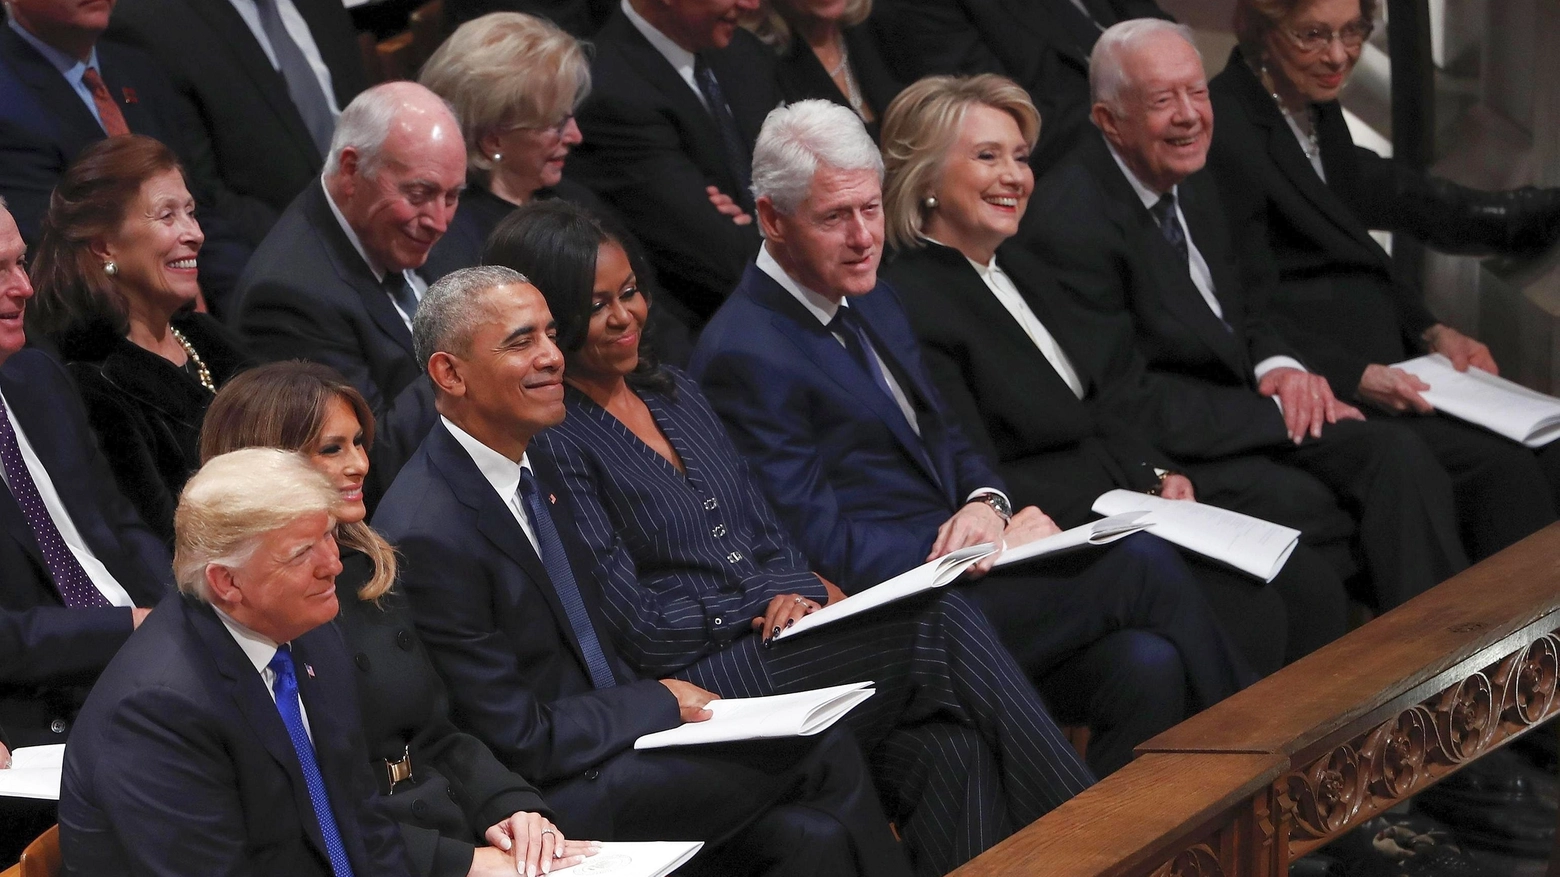 Le risate dei presidenti al funerale di Bush (Ansa)